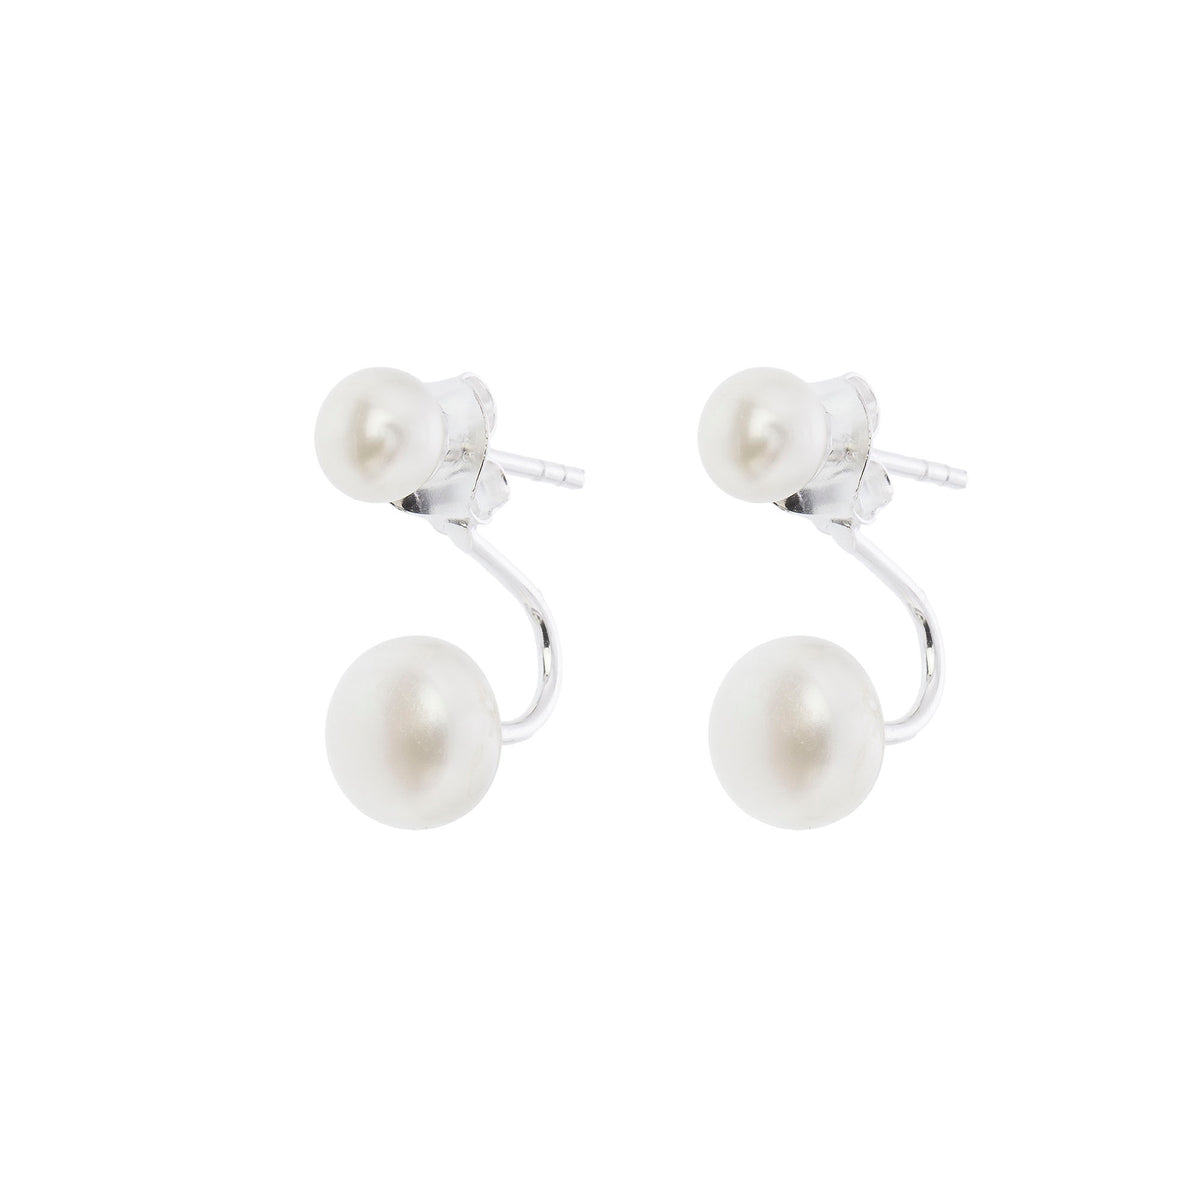 Boucles d'oreilles Lara en argent avec perles, parfaites pour les mariages